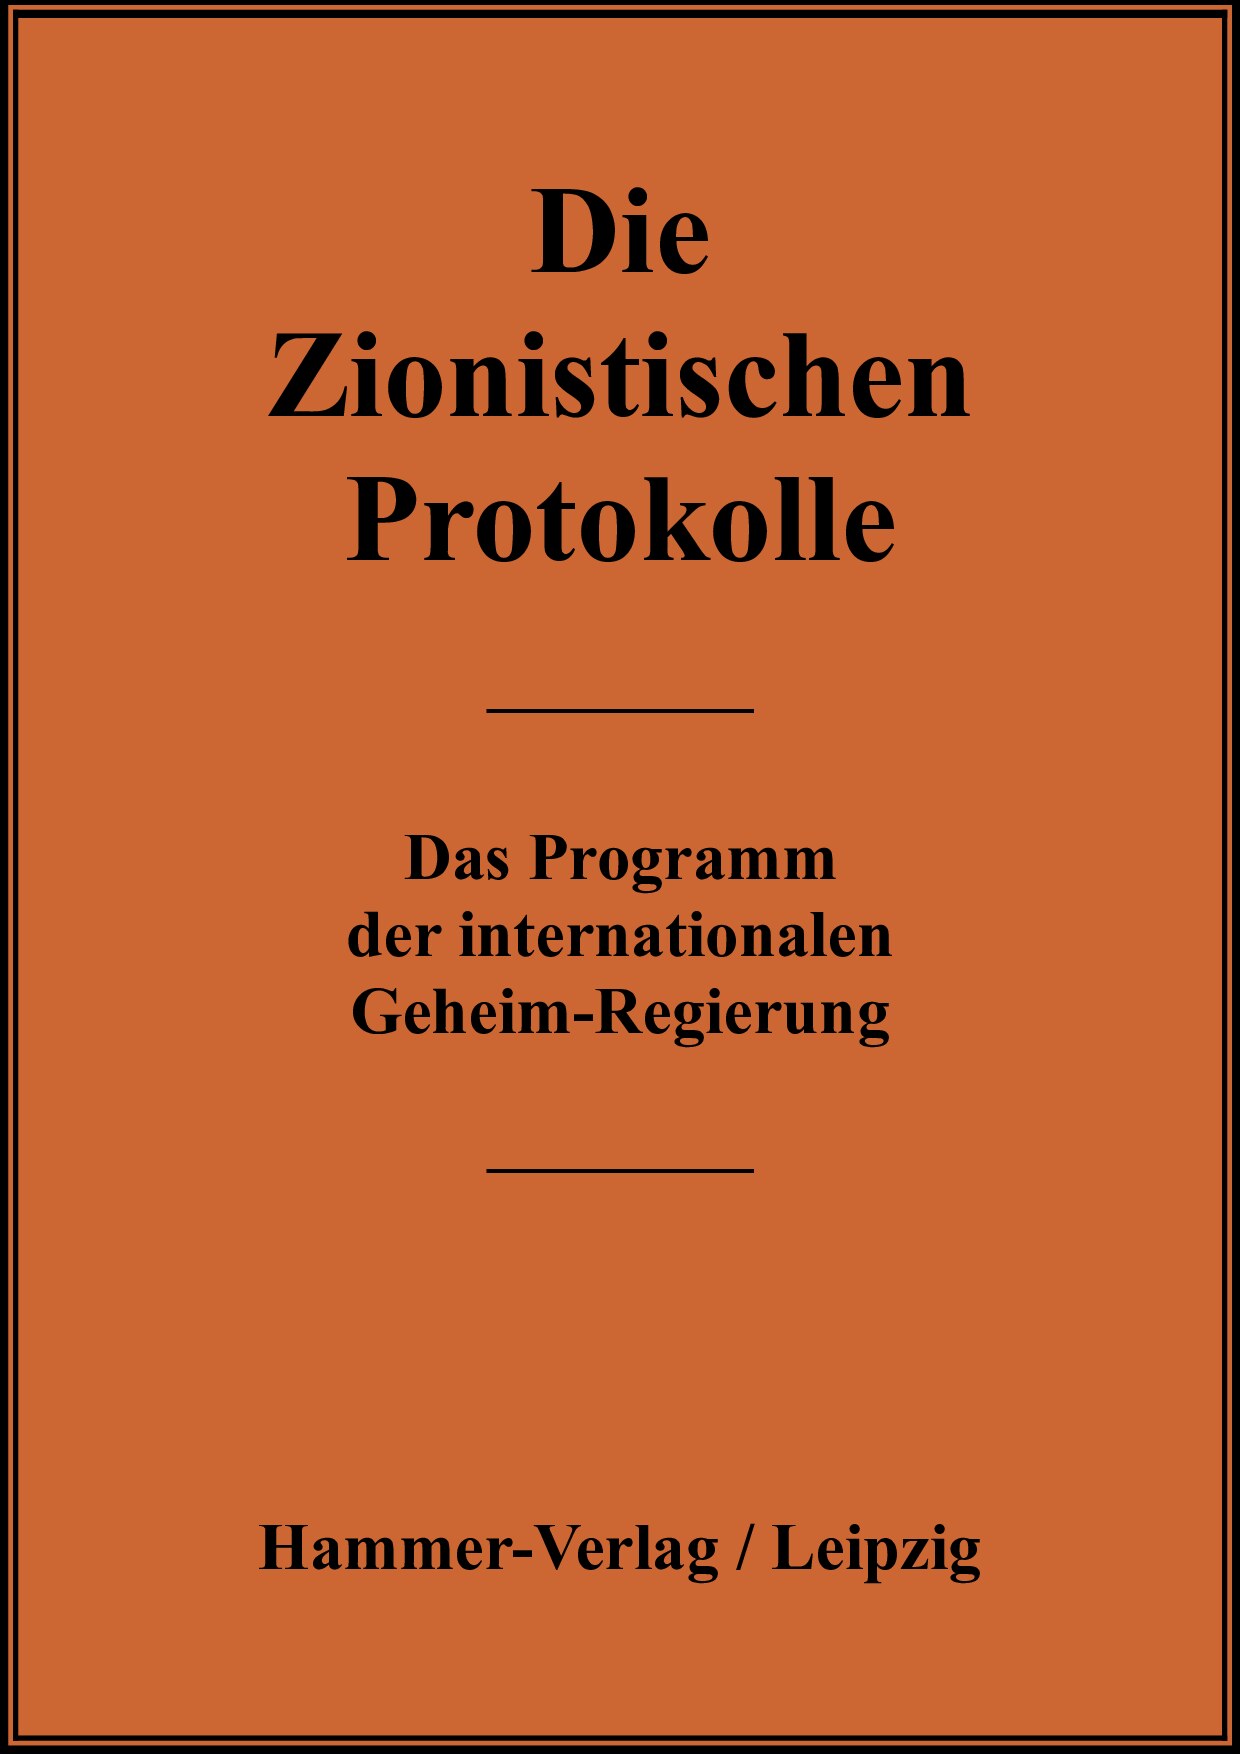 Die Zionistischen Protokolle